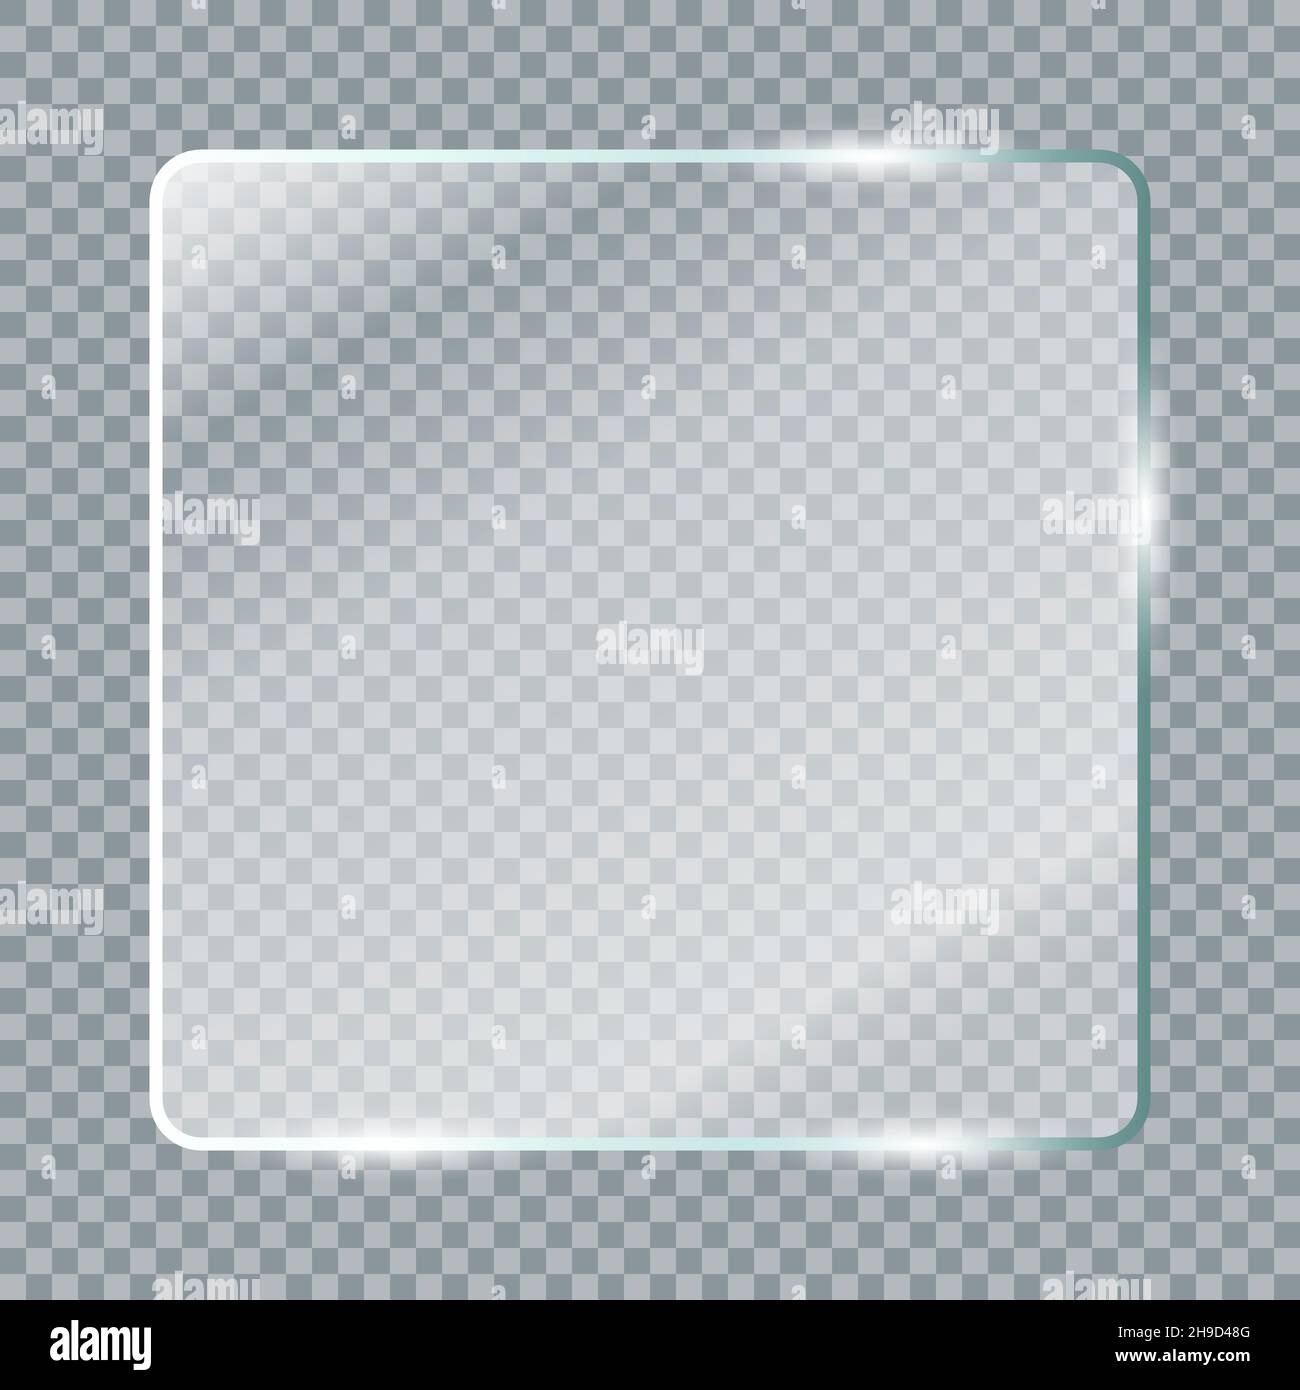 Plaques de verre transparentes.Fenêtre en verre transparent réaliste dans  un cadre rectangulaire.Illustration vectorielle Image Vectorielle Stock -  Alamy